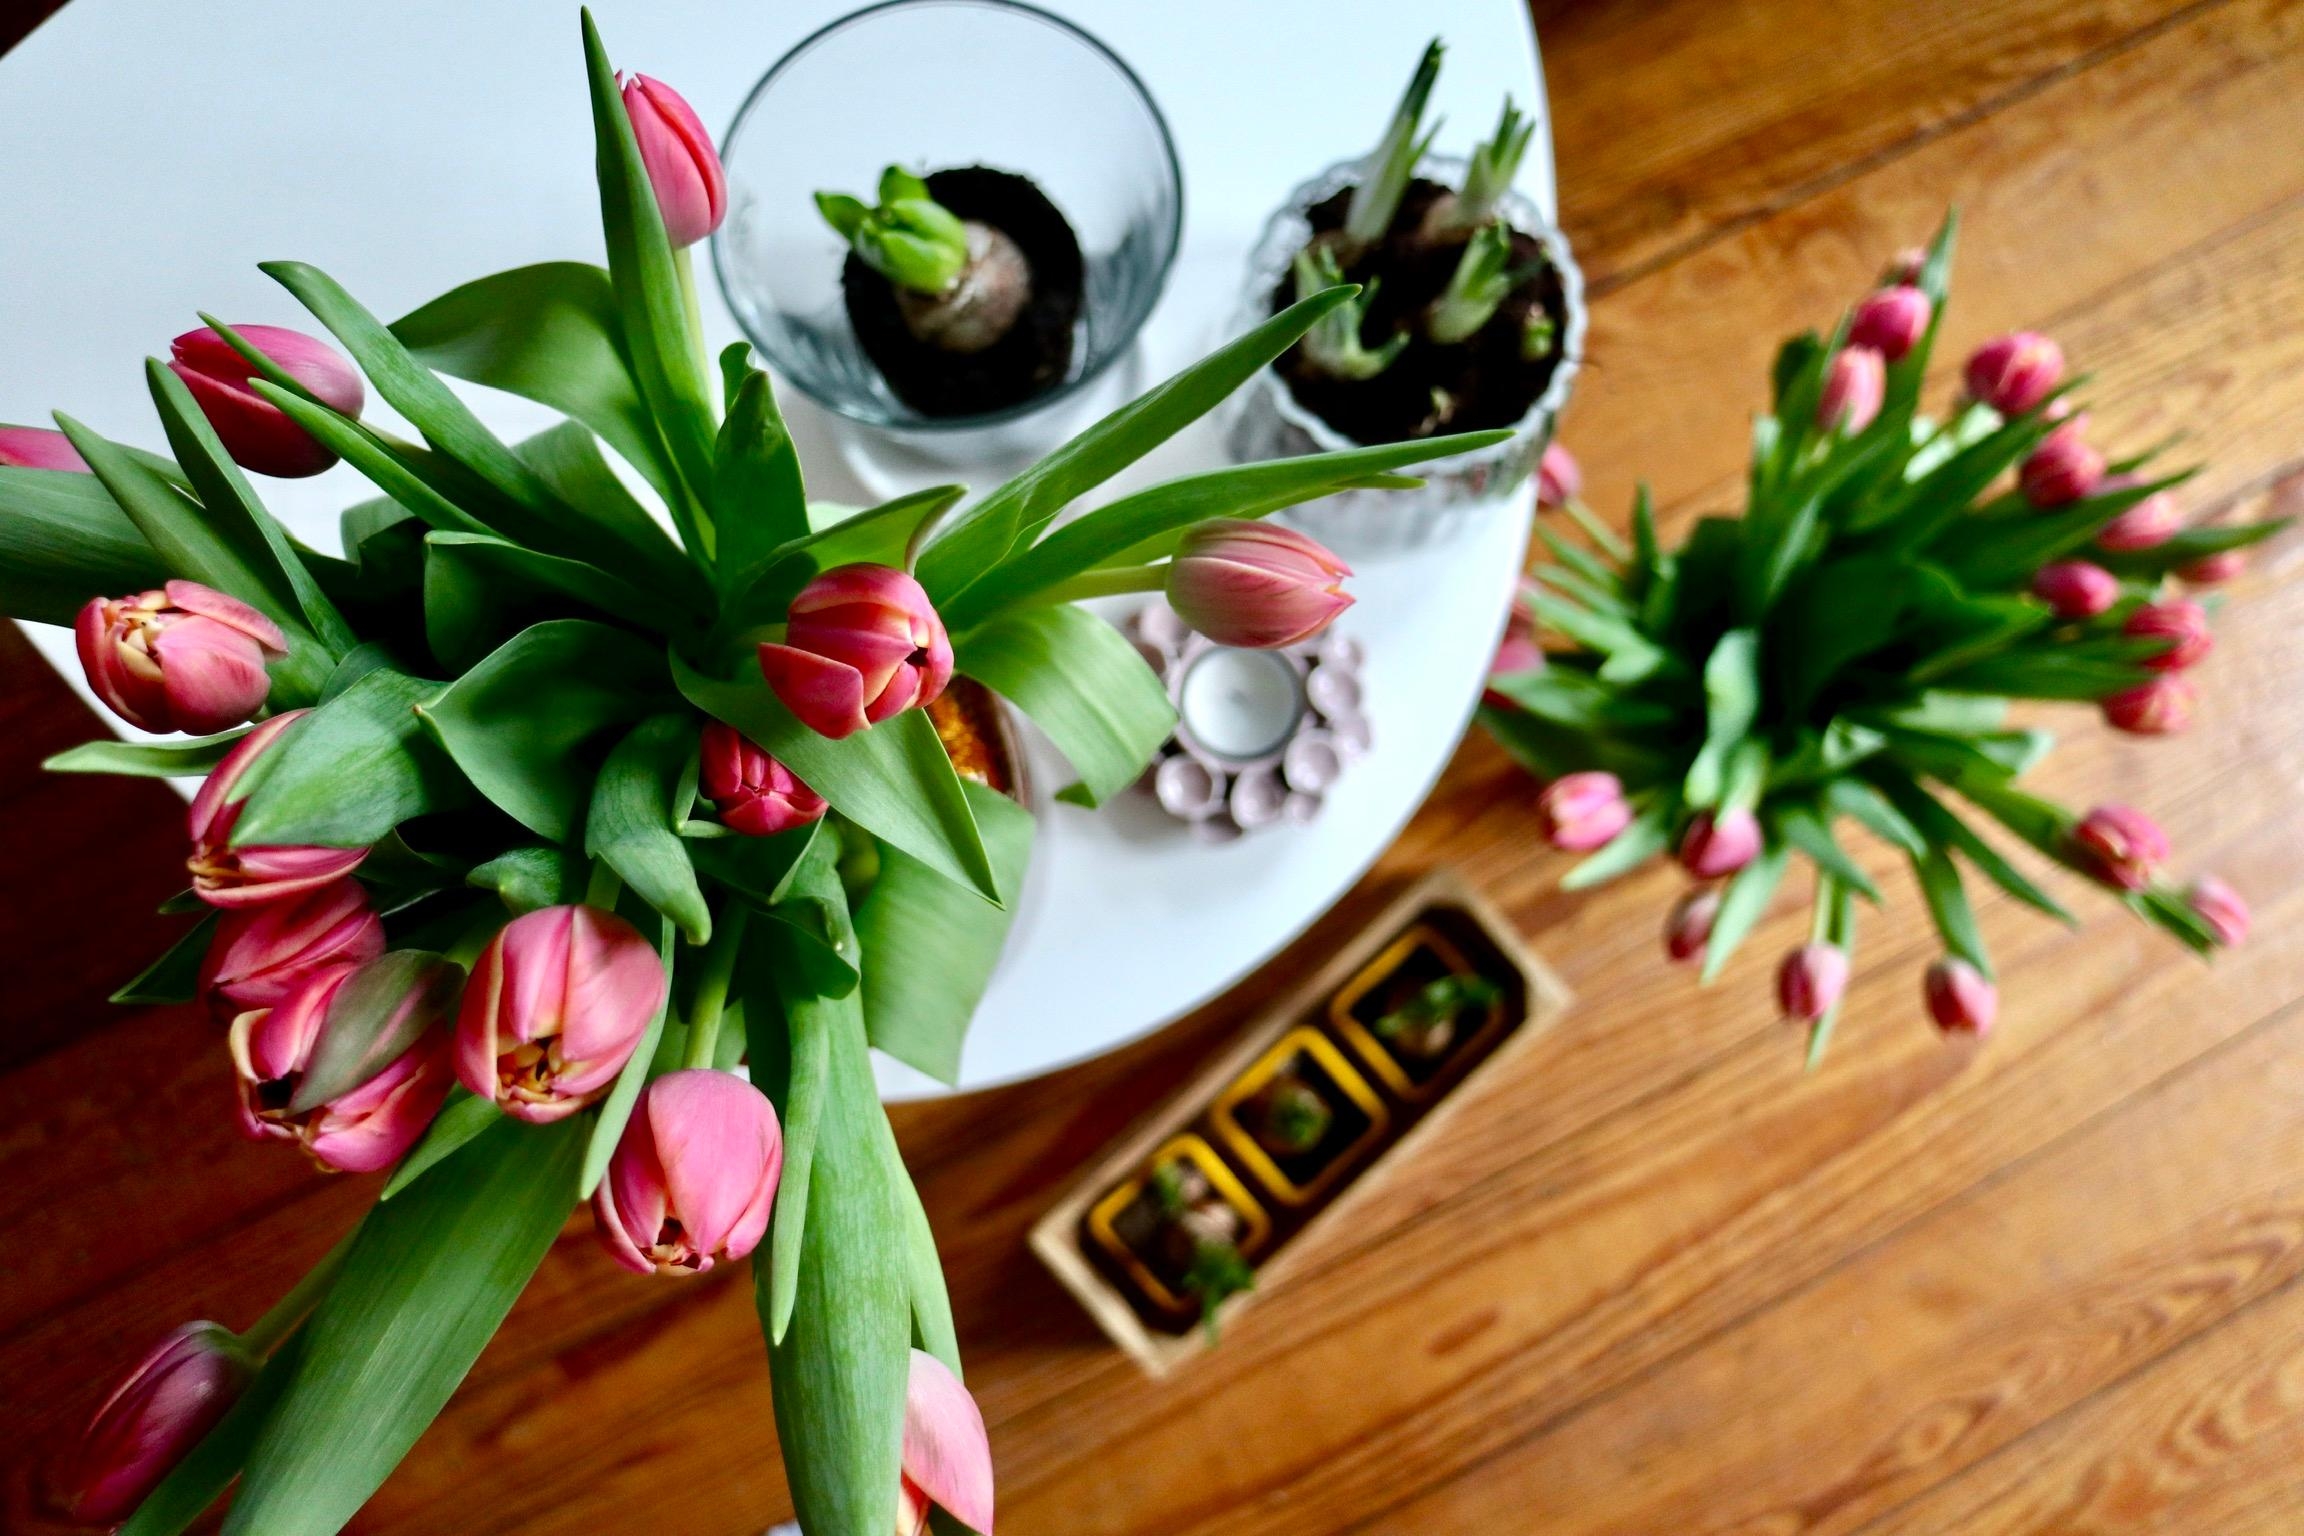 Eine große Portion Frühling bitte! 
#tulpen #livingchallenge #freshflowerfriday